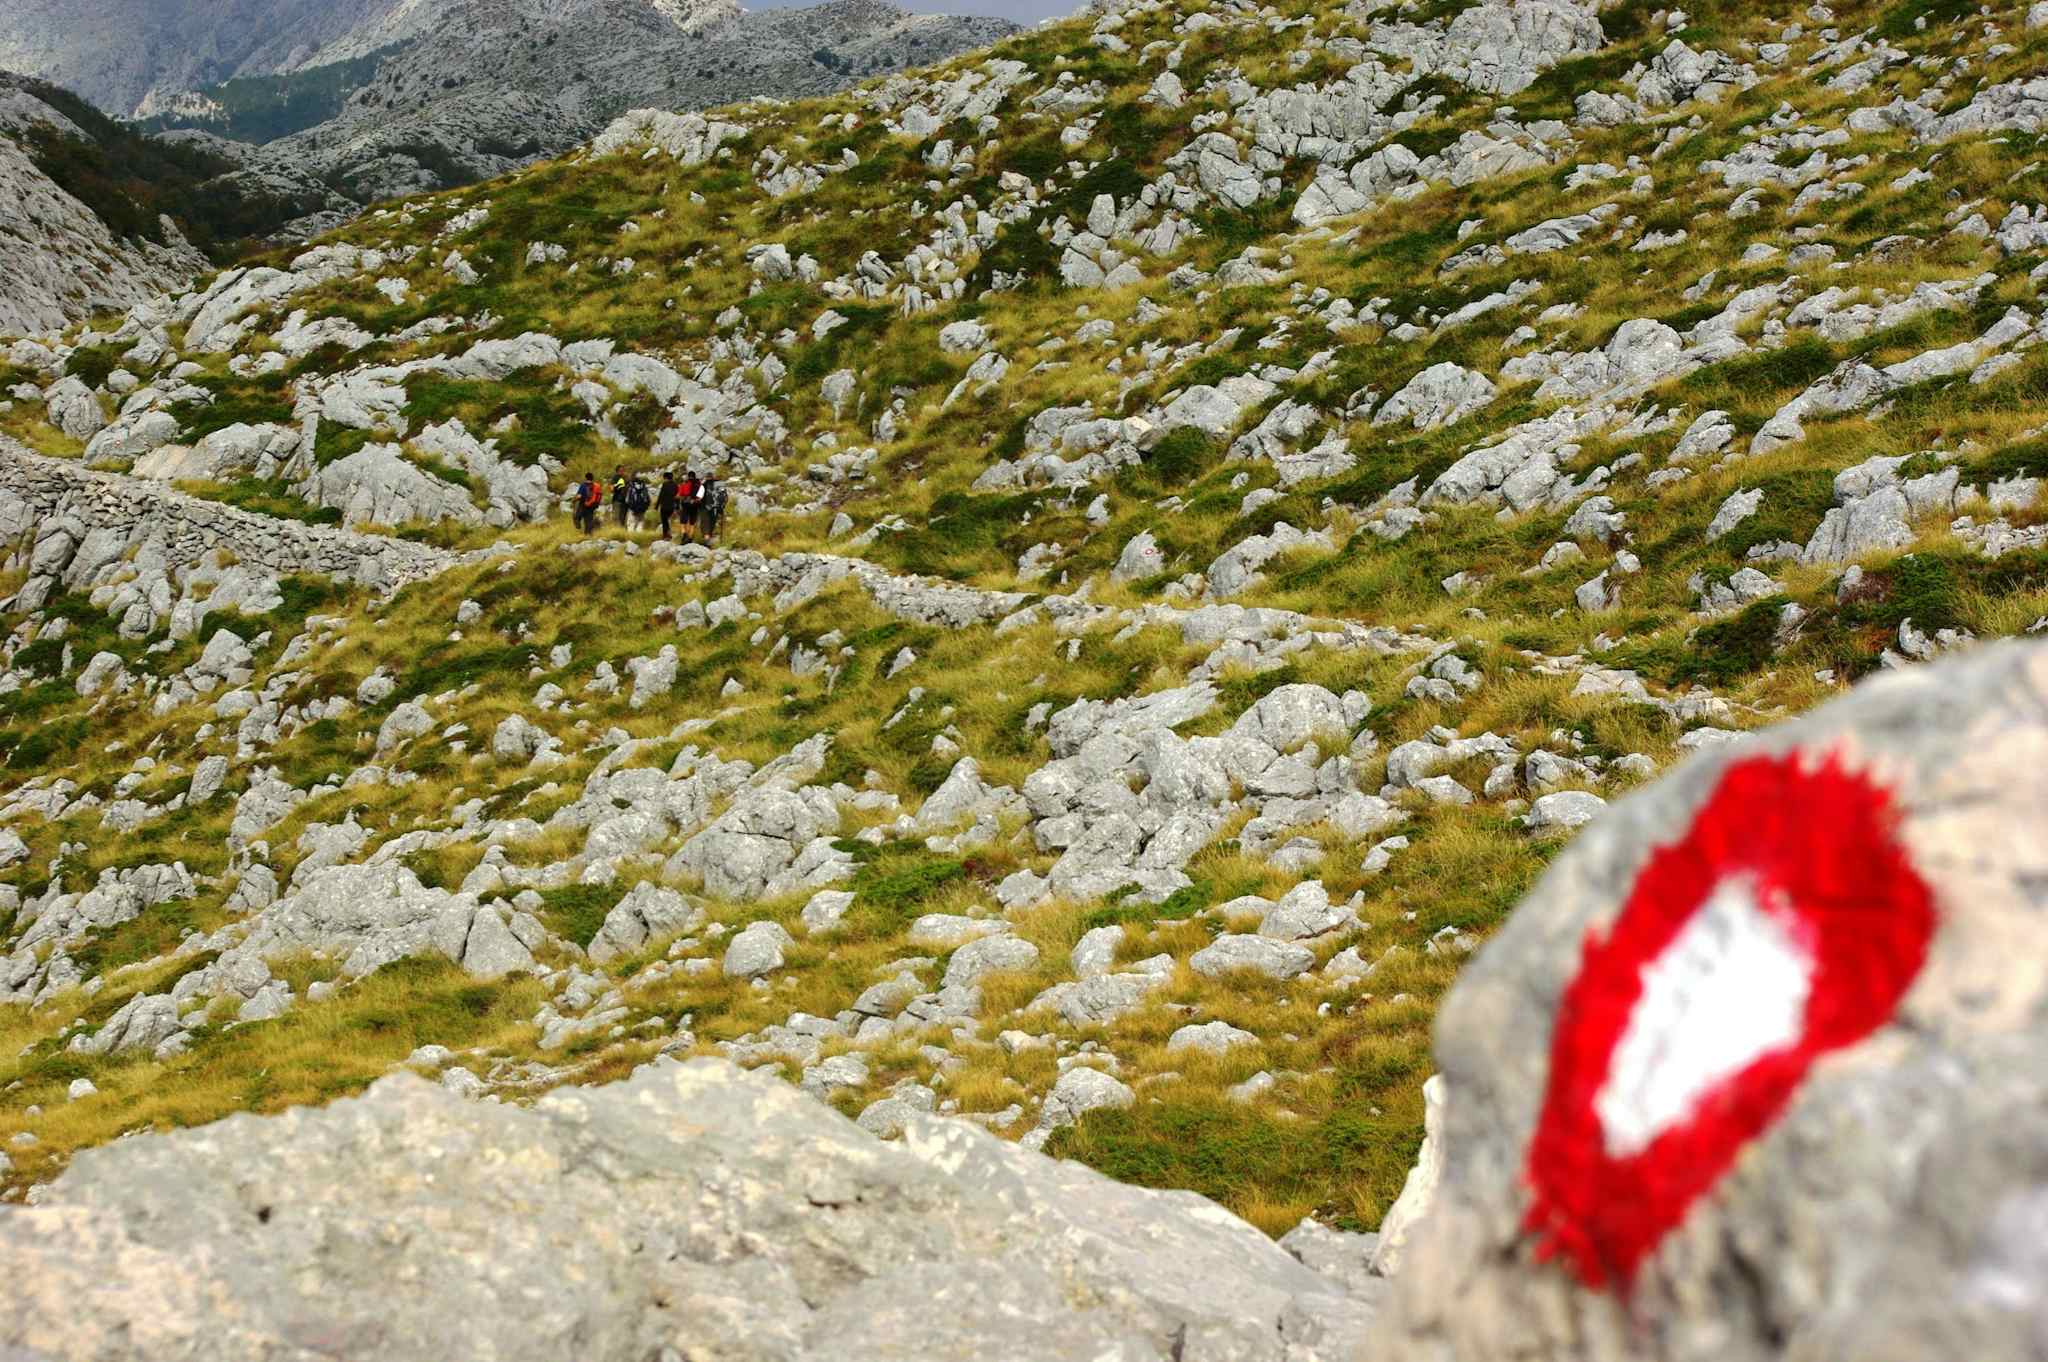 Trek the Via Dinarica Trail from Croatia to Bosnia